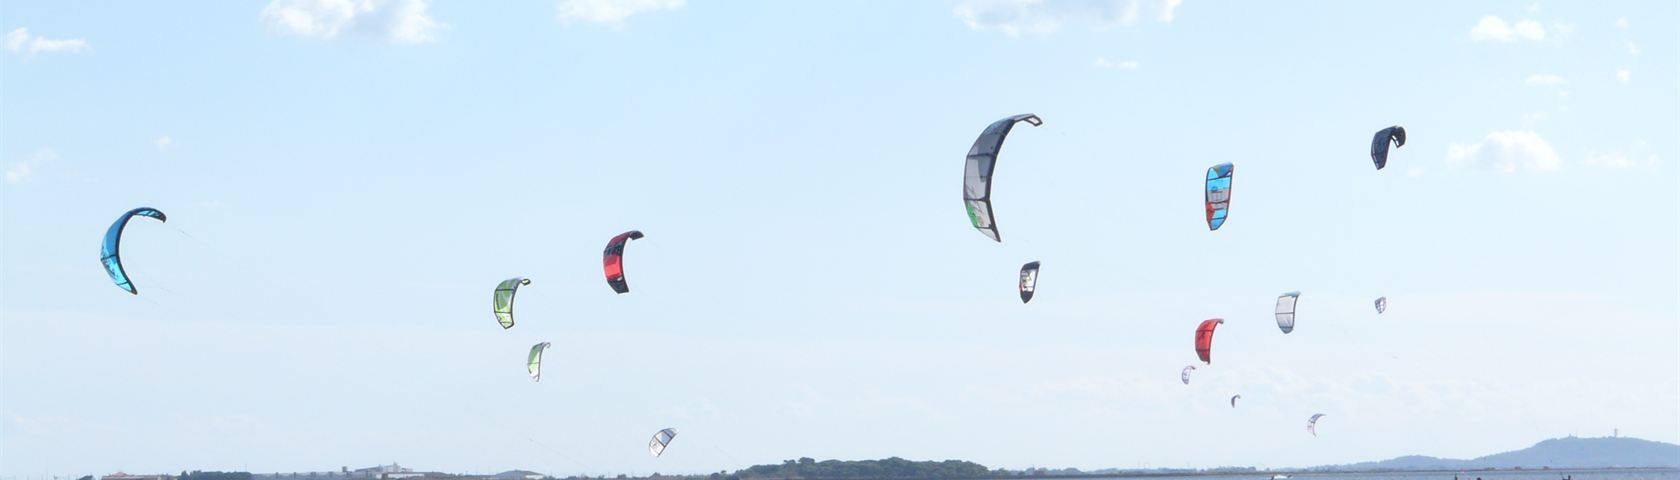 Kite Surfers